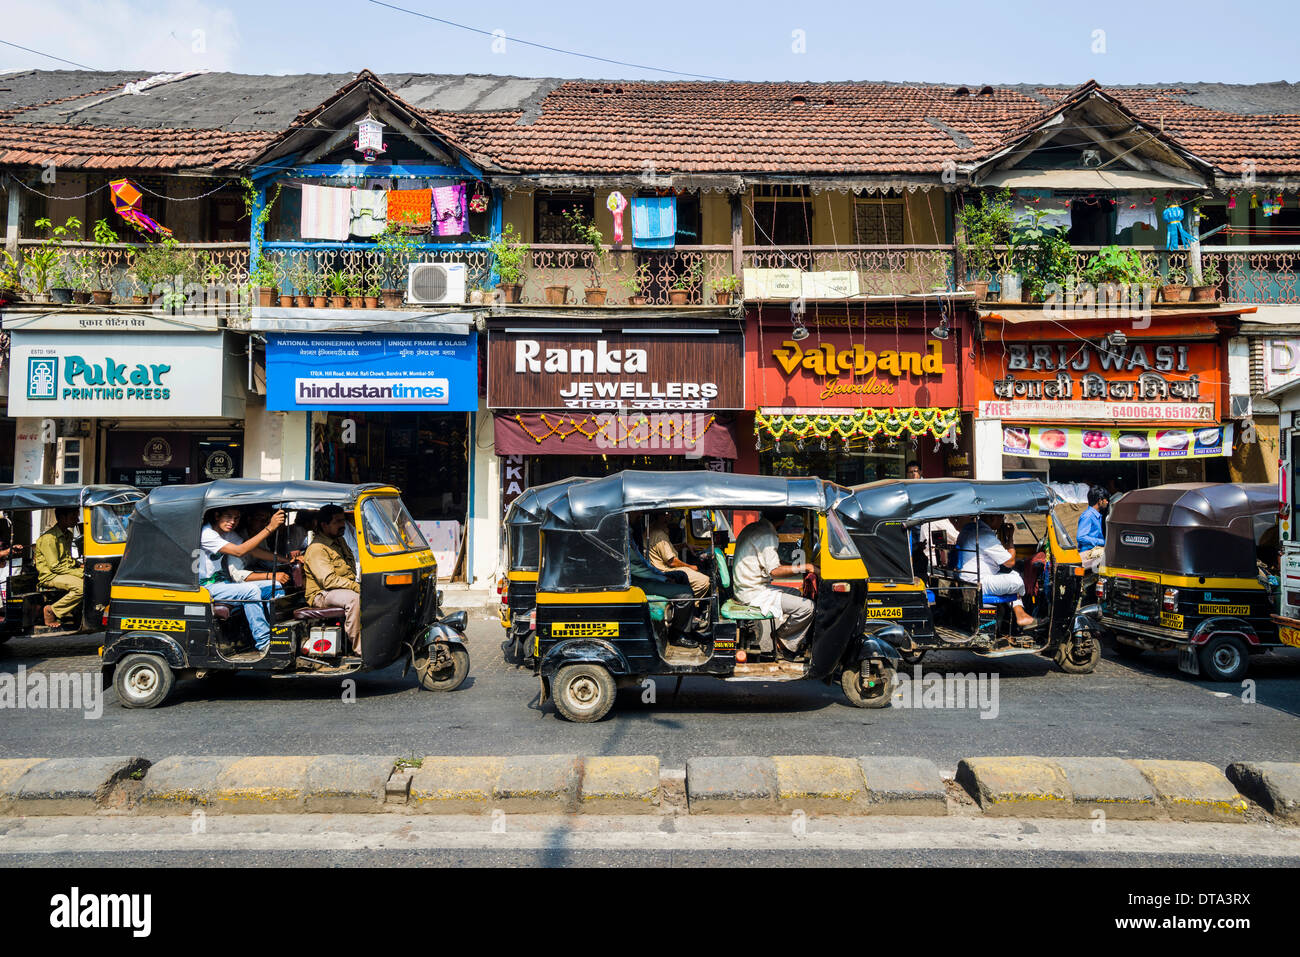 Motor rikshaws parked in front of a row of old houses, Bandra, Mumbai, Maharashtra, India Stock Photo